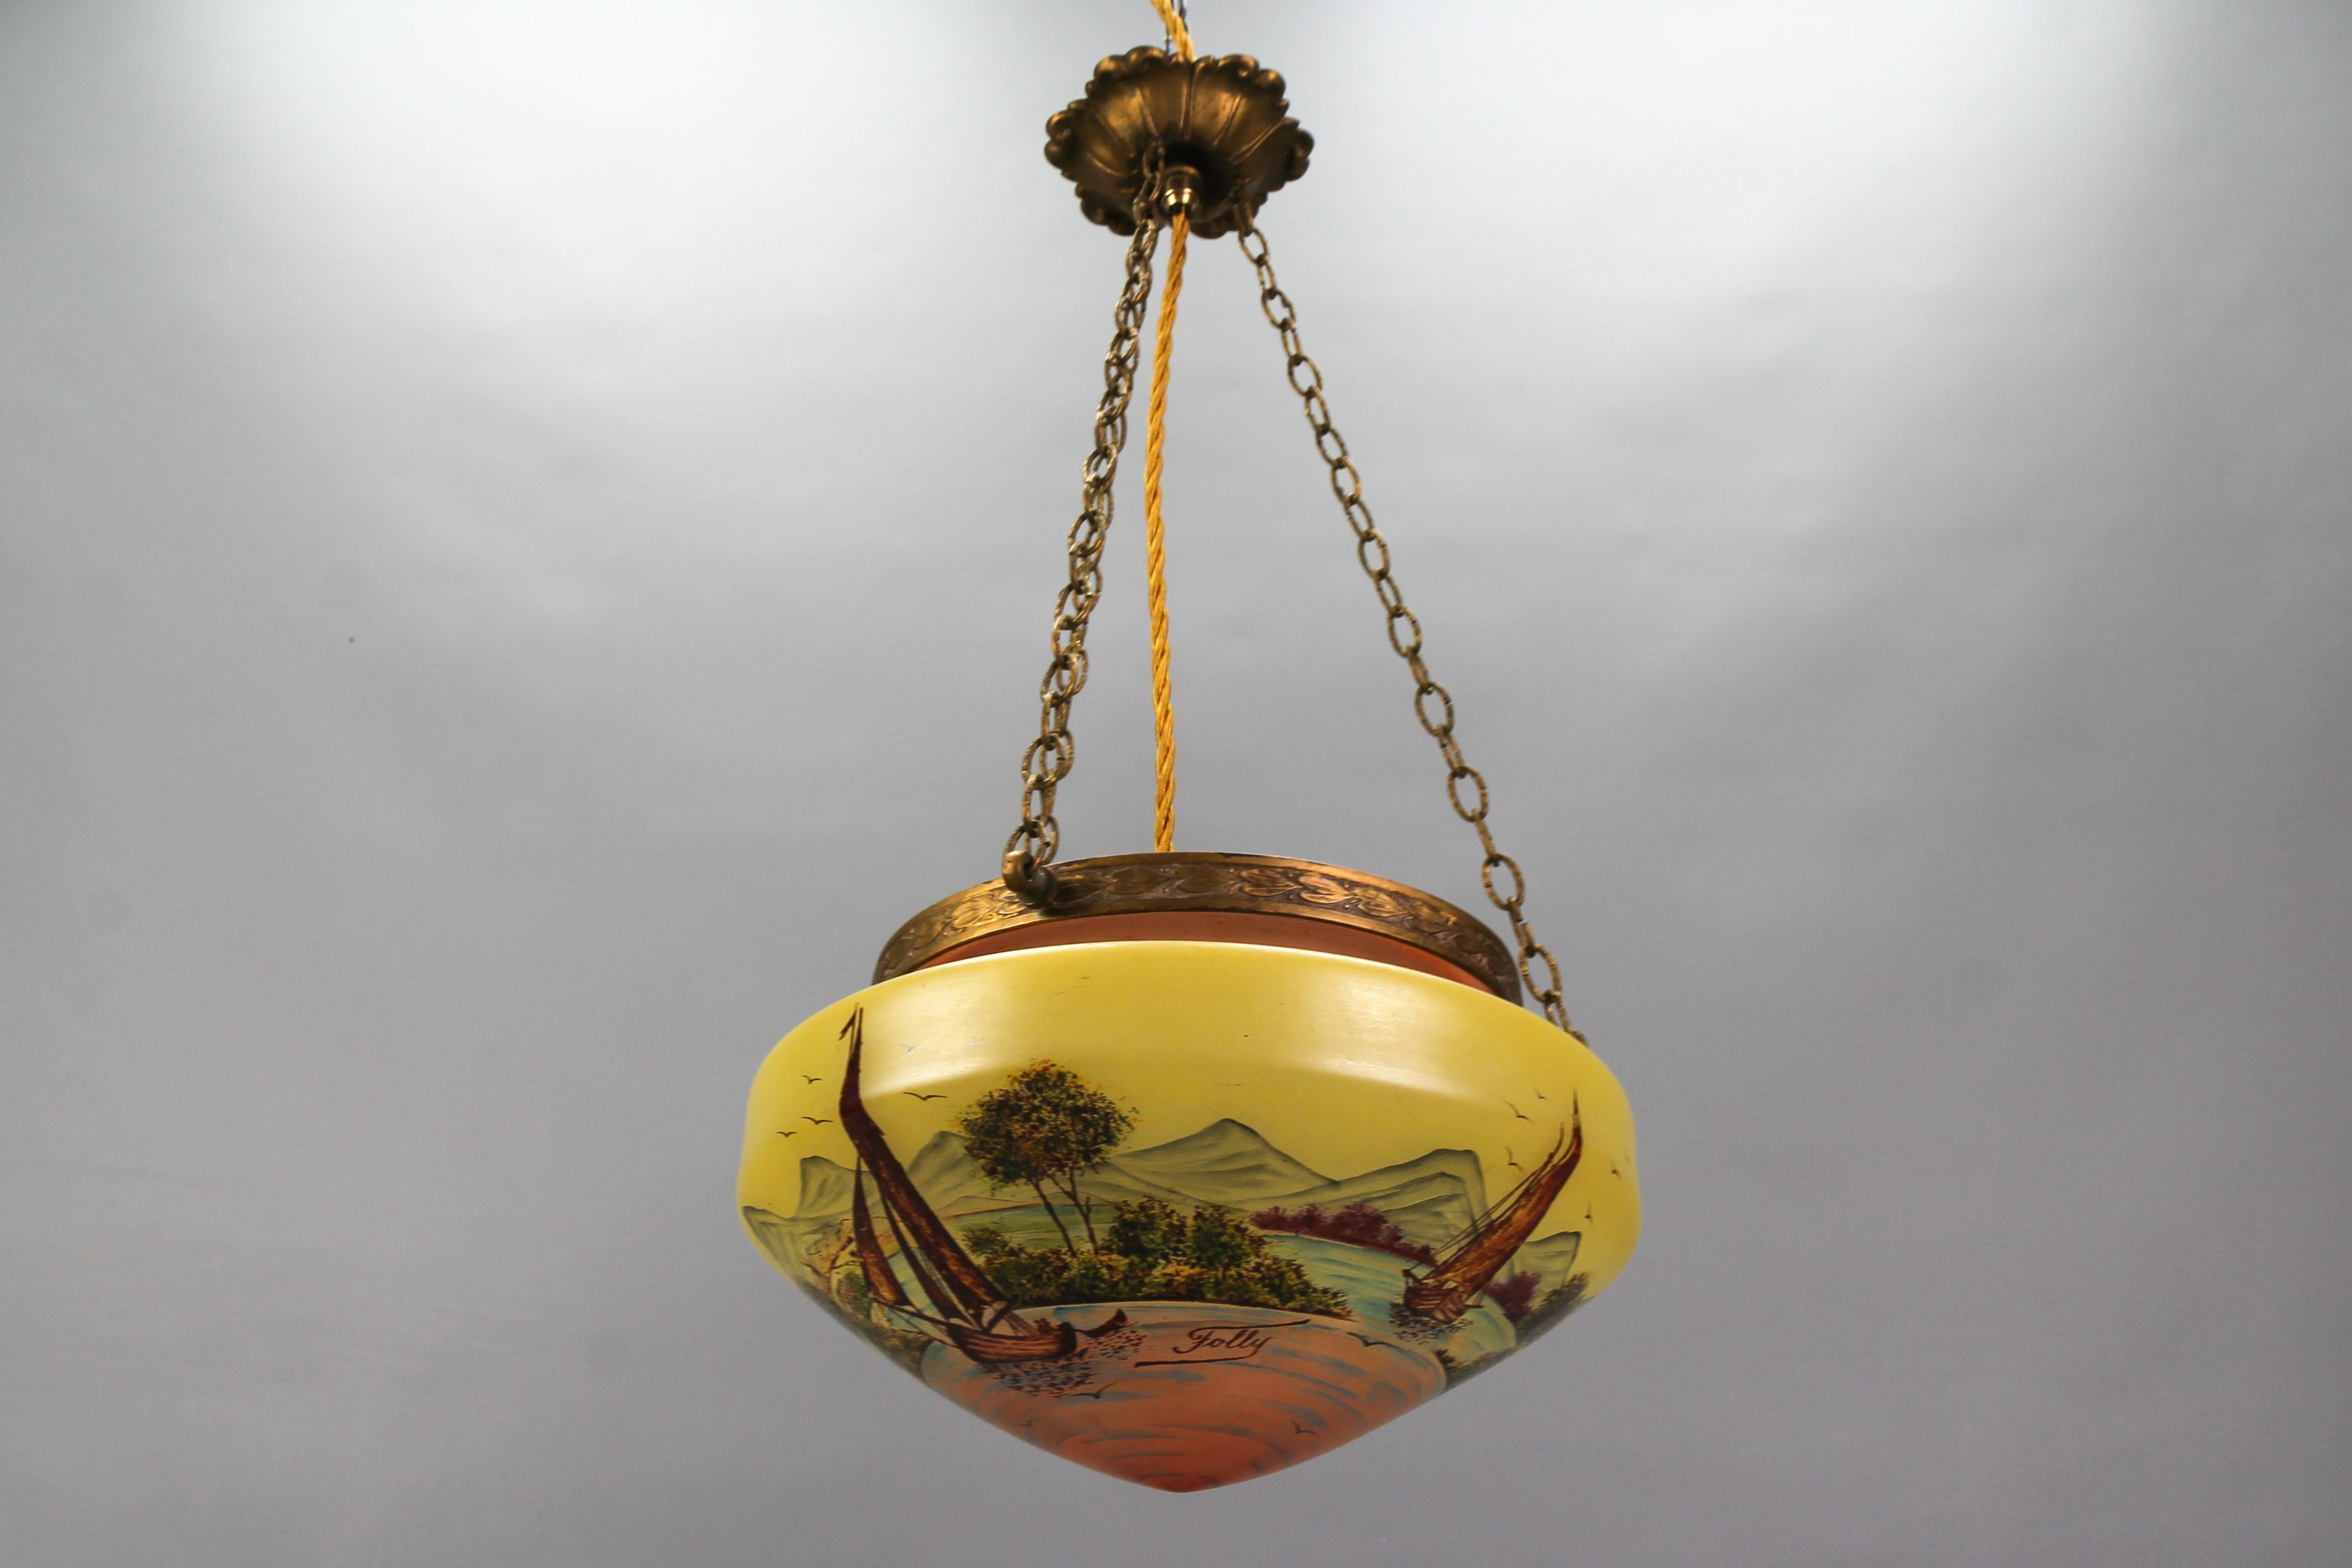 Suspension de style néoclassique en laiton et verre avec paysage peint à la main, datant d'environ les années 1920.
Ce superbe luminaire suspendu de style néoclassique présente un abat-jour en verre jaune et saumon pâle - un bol ovale. L'abat-jour